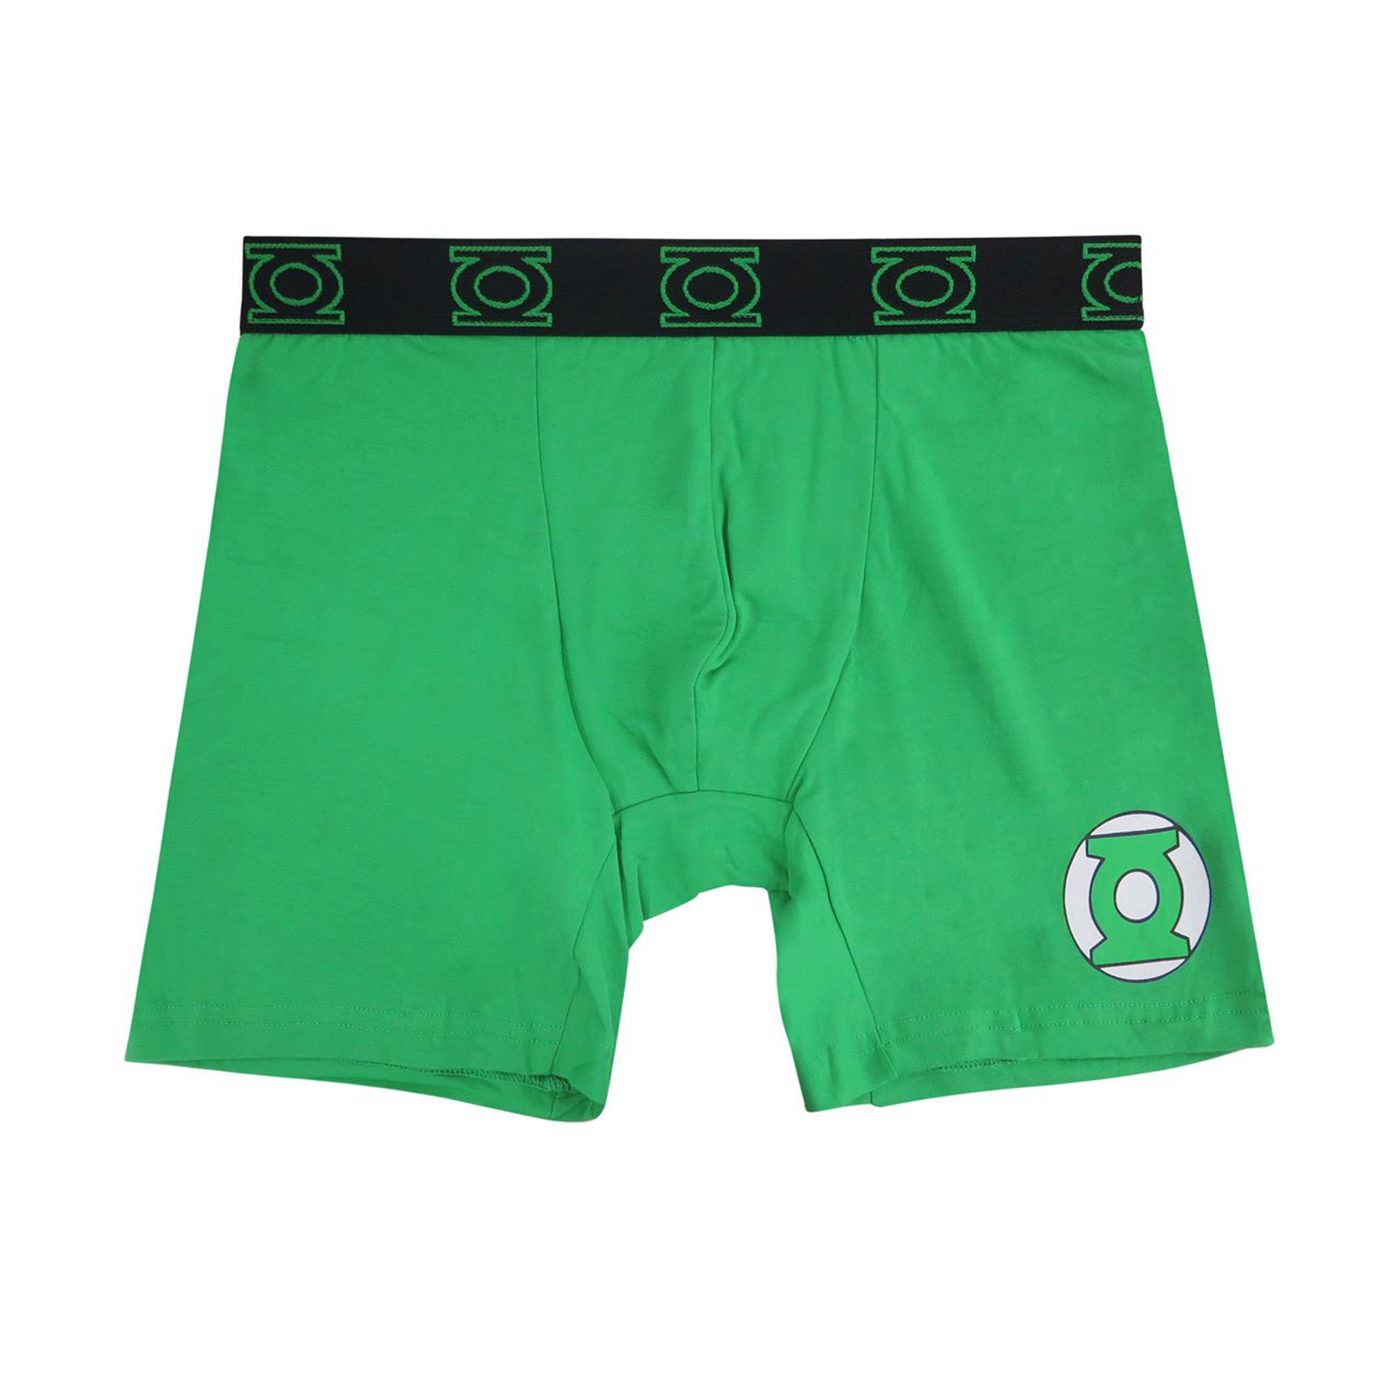 Green Lantern Men's Underwear Fashion Boxer Briefs